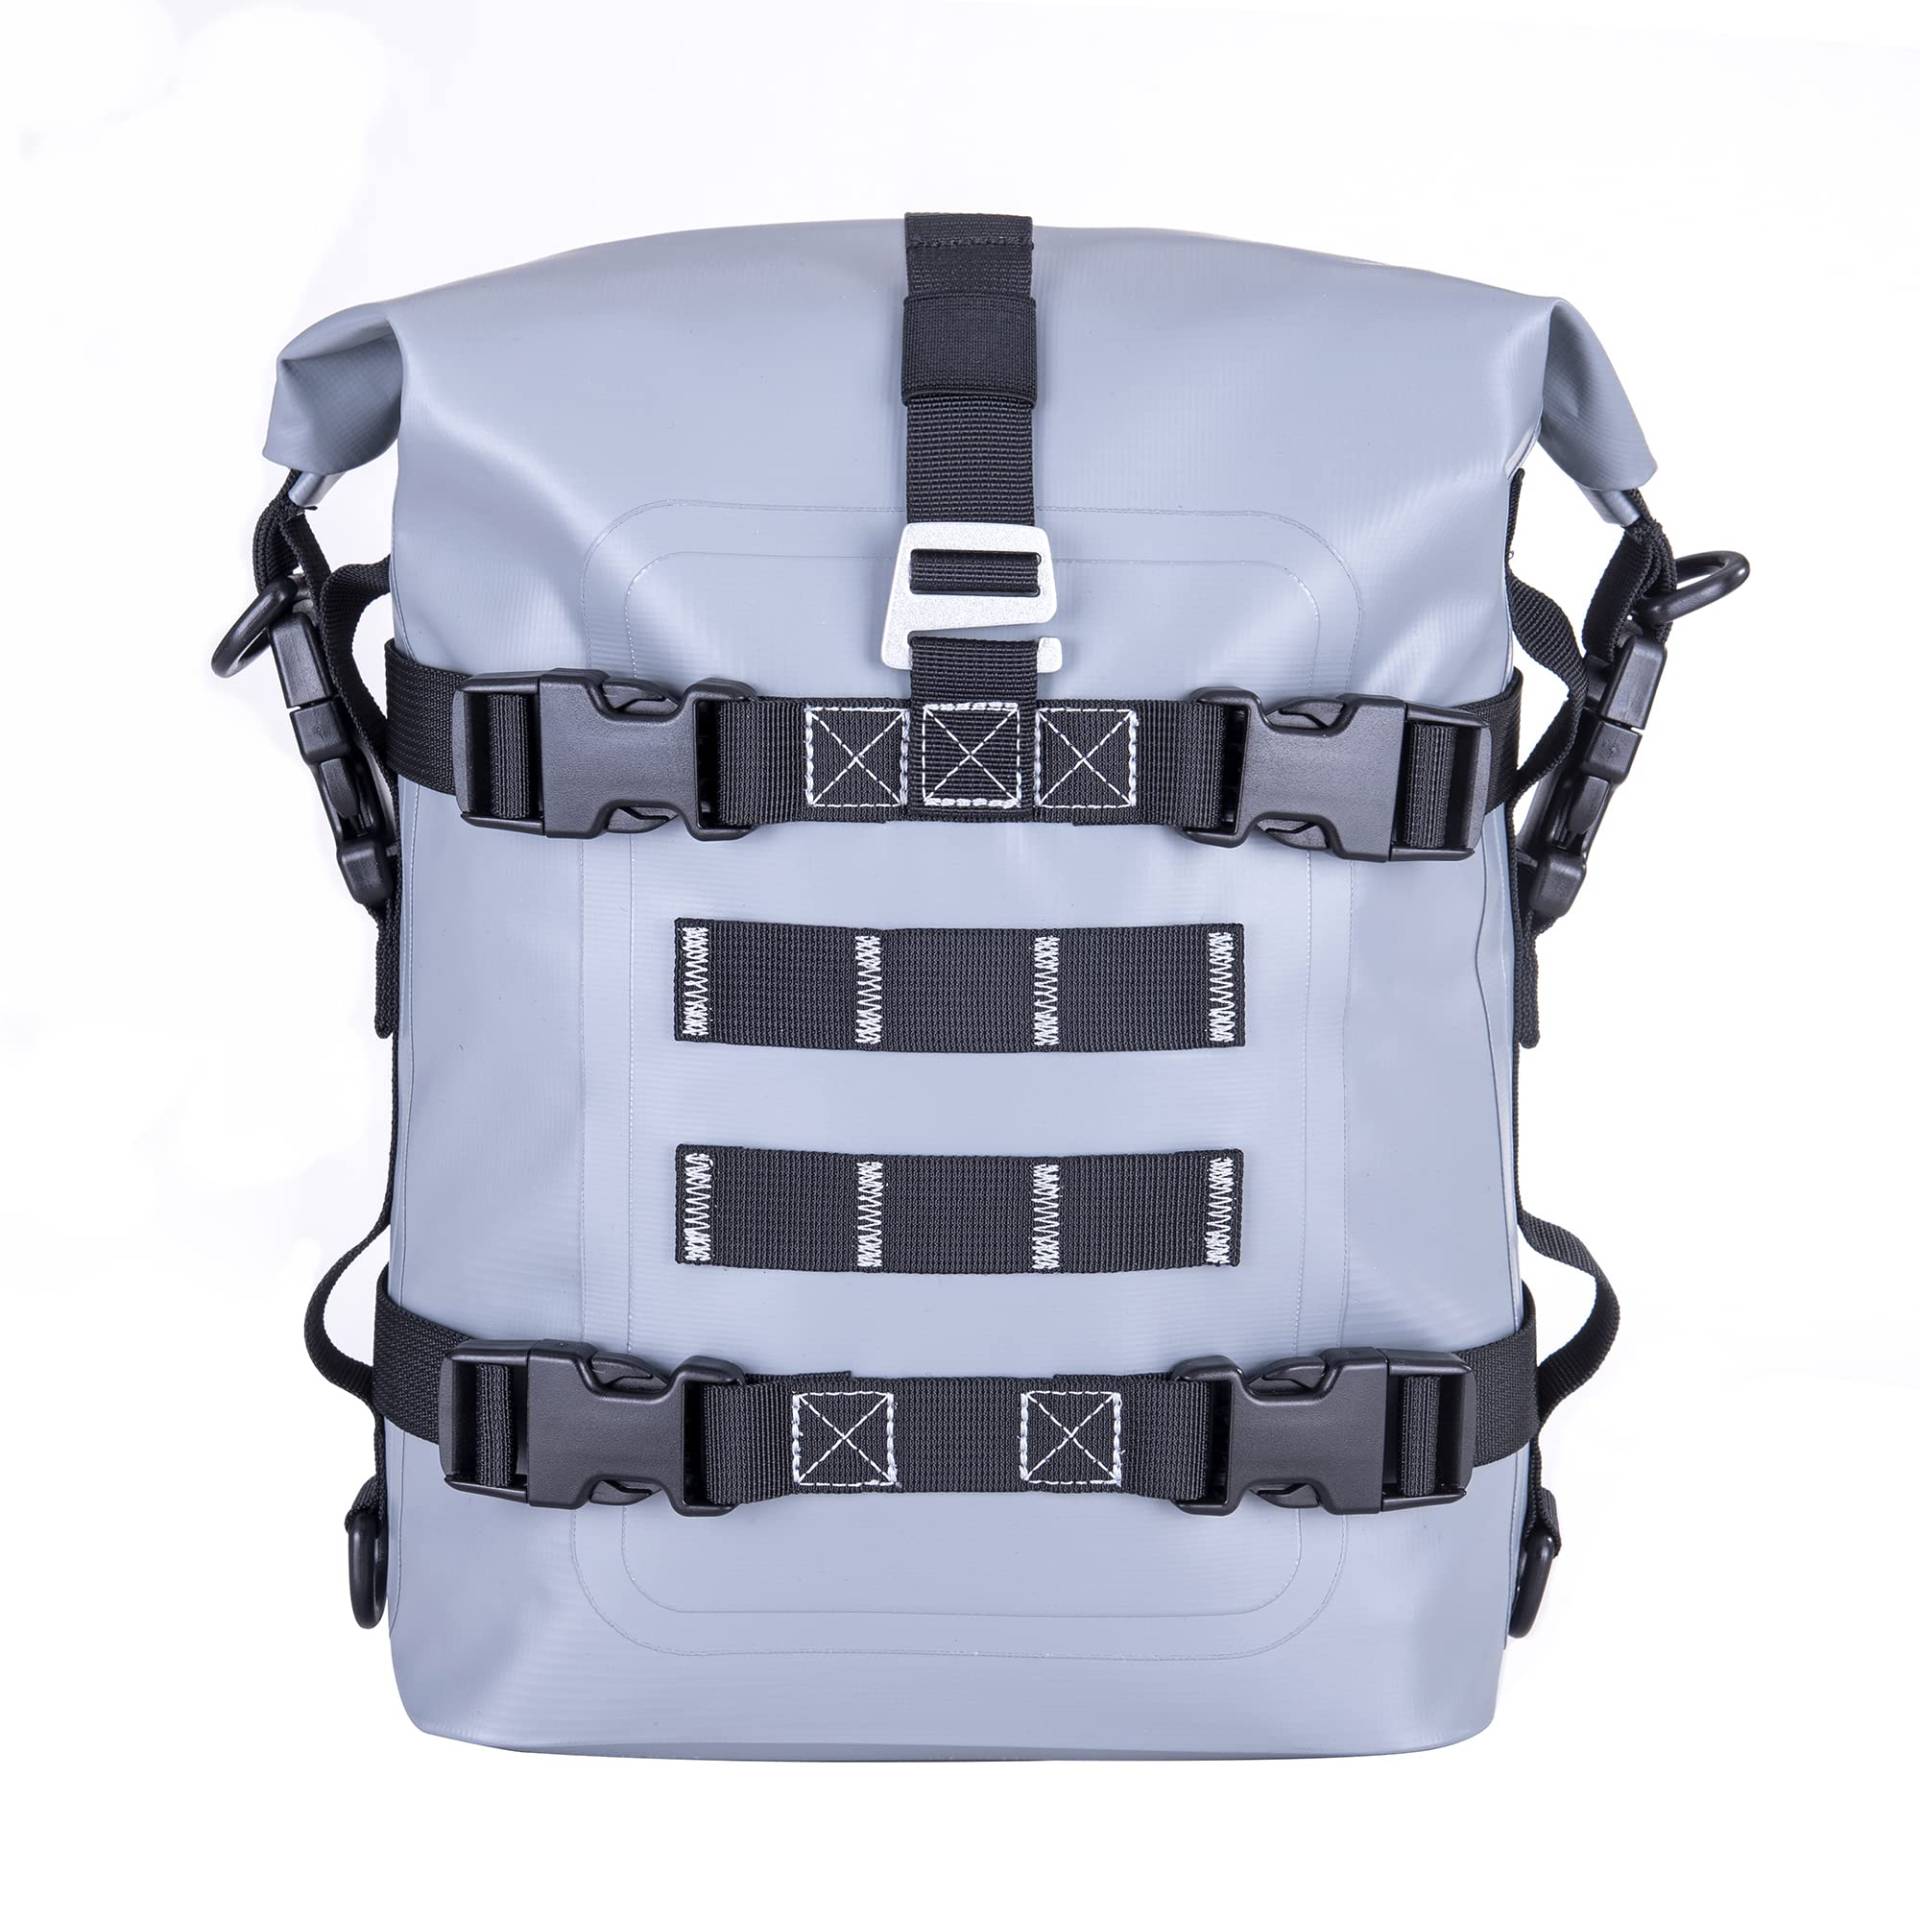 WILD Herat Motorrad-Schutzbügel-Tasche – Wasserabweisender Heckträger für Kofferraum, Motorradaufbewahrung für wichtige Ausrüstung und Zubehör (grau) (Grau) von WILD HEART